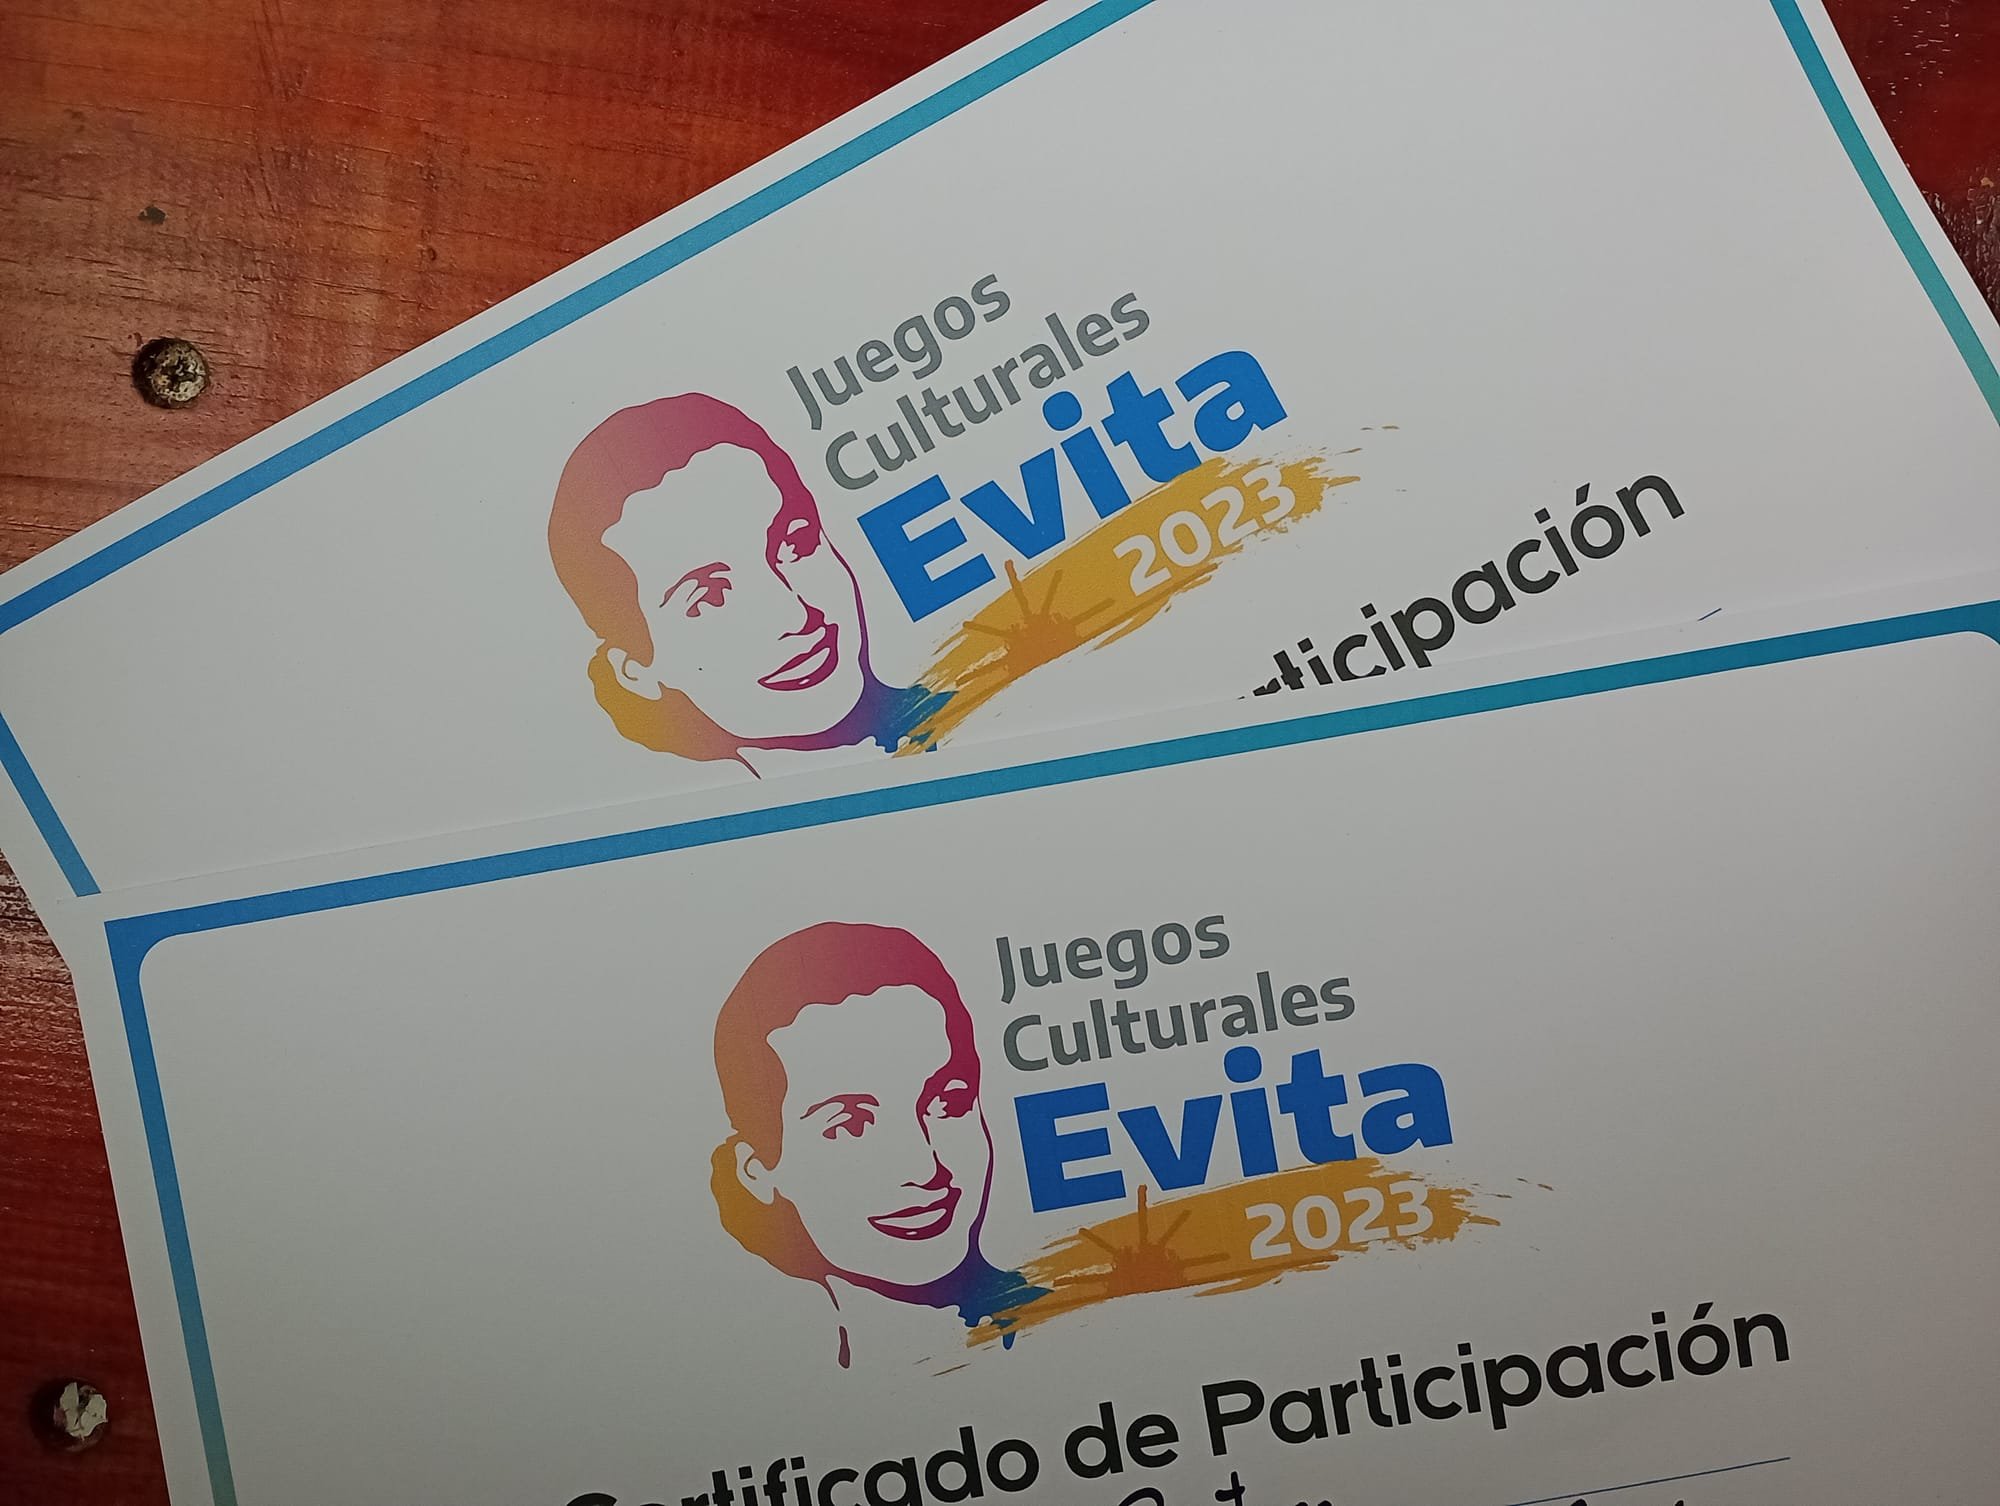 Juegos Culturales Evita 2023